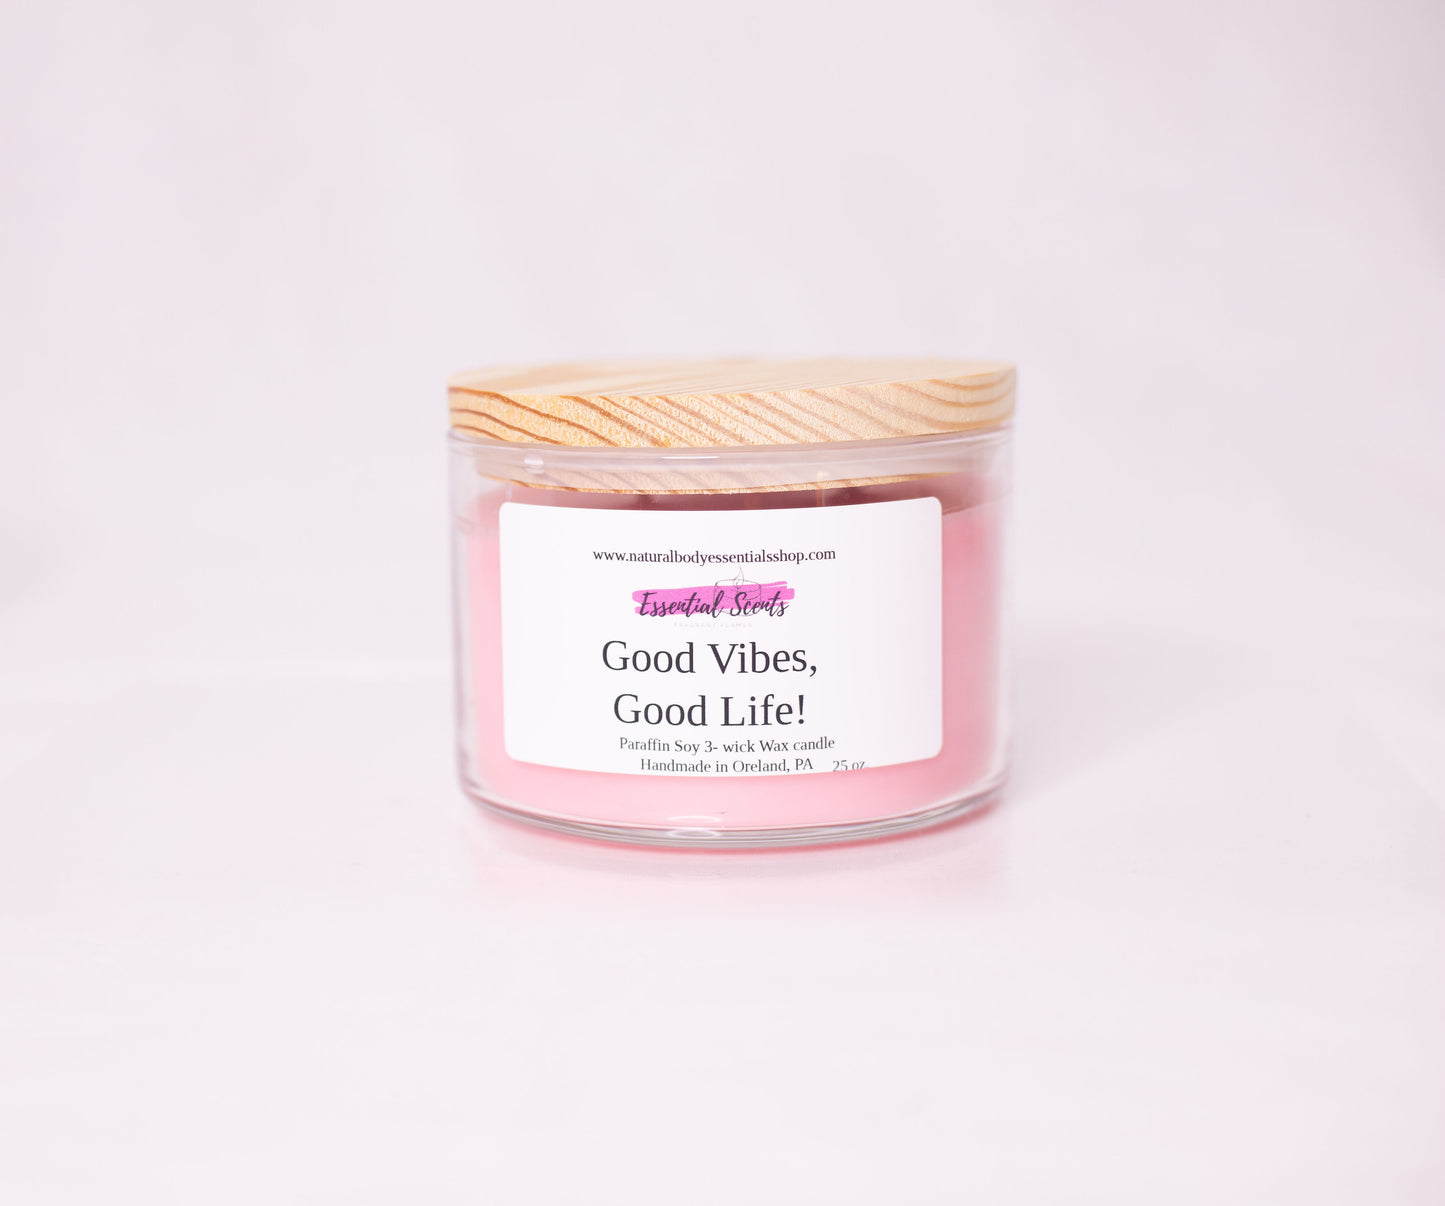 Good vibes, Good life!